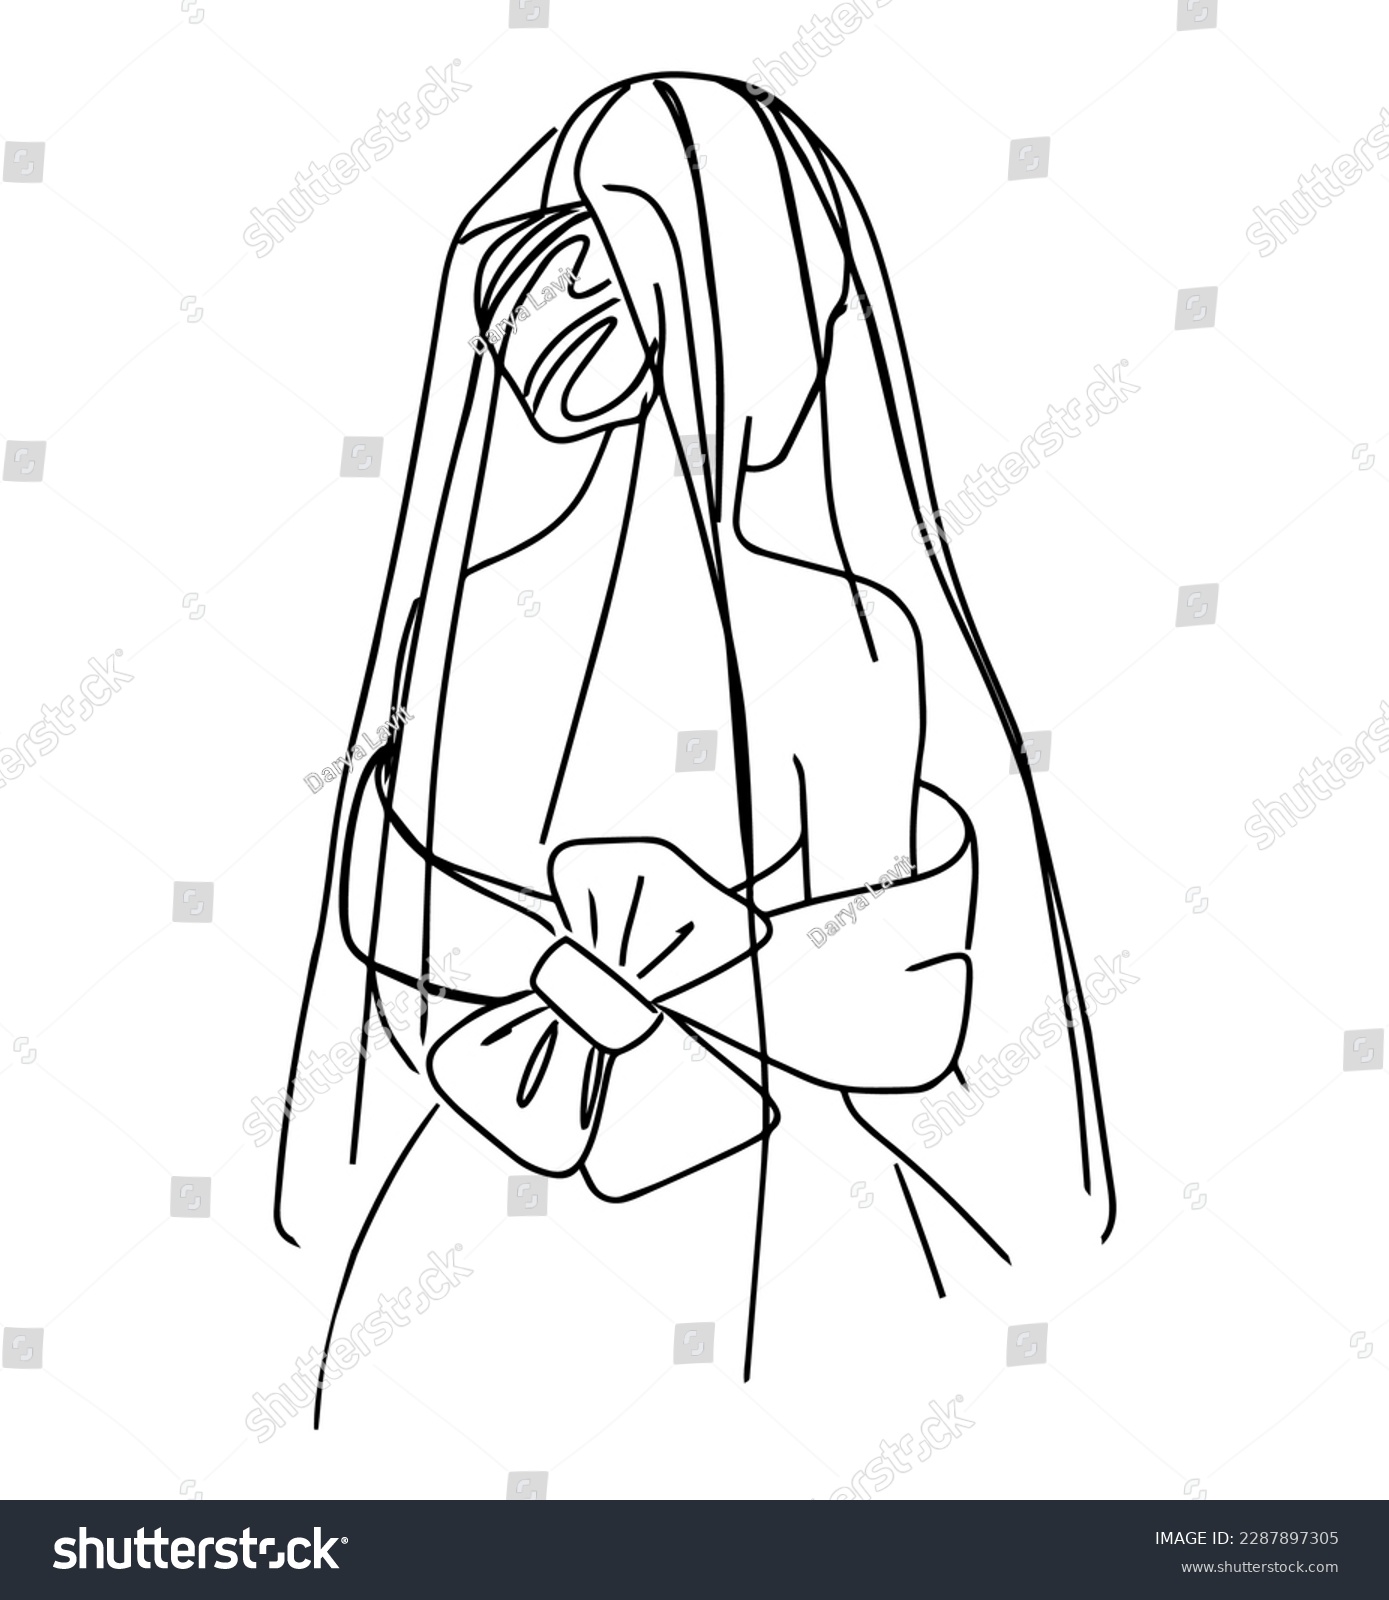 SVG of  Hand drawn bride in styleline art in designer dress and veil. Vector elegant illustration. svg